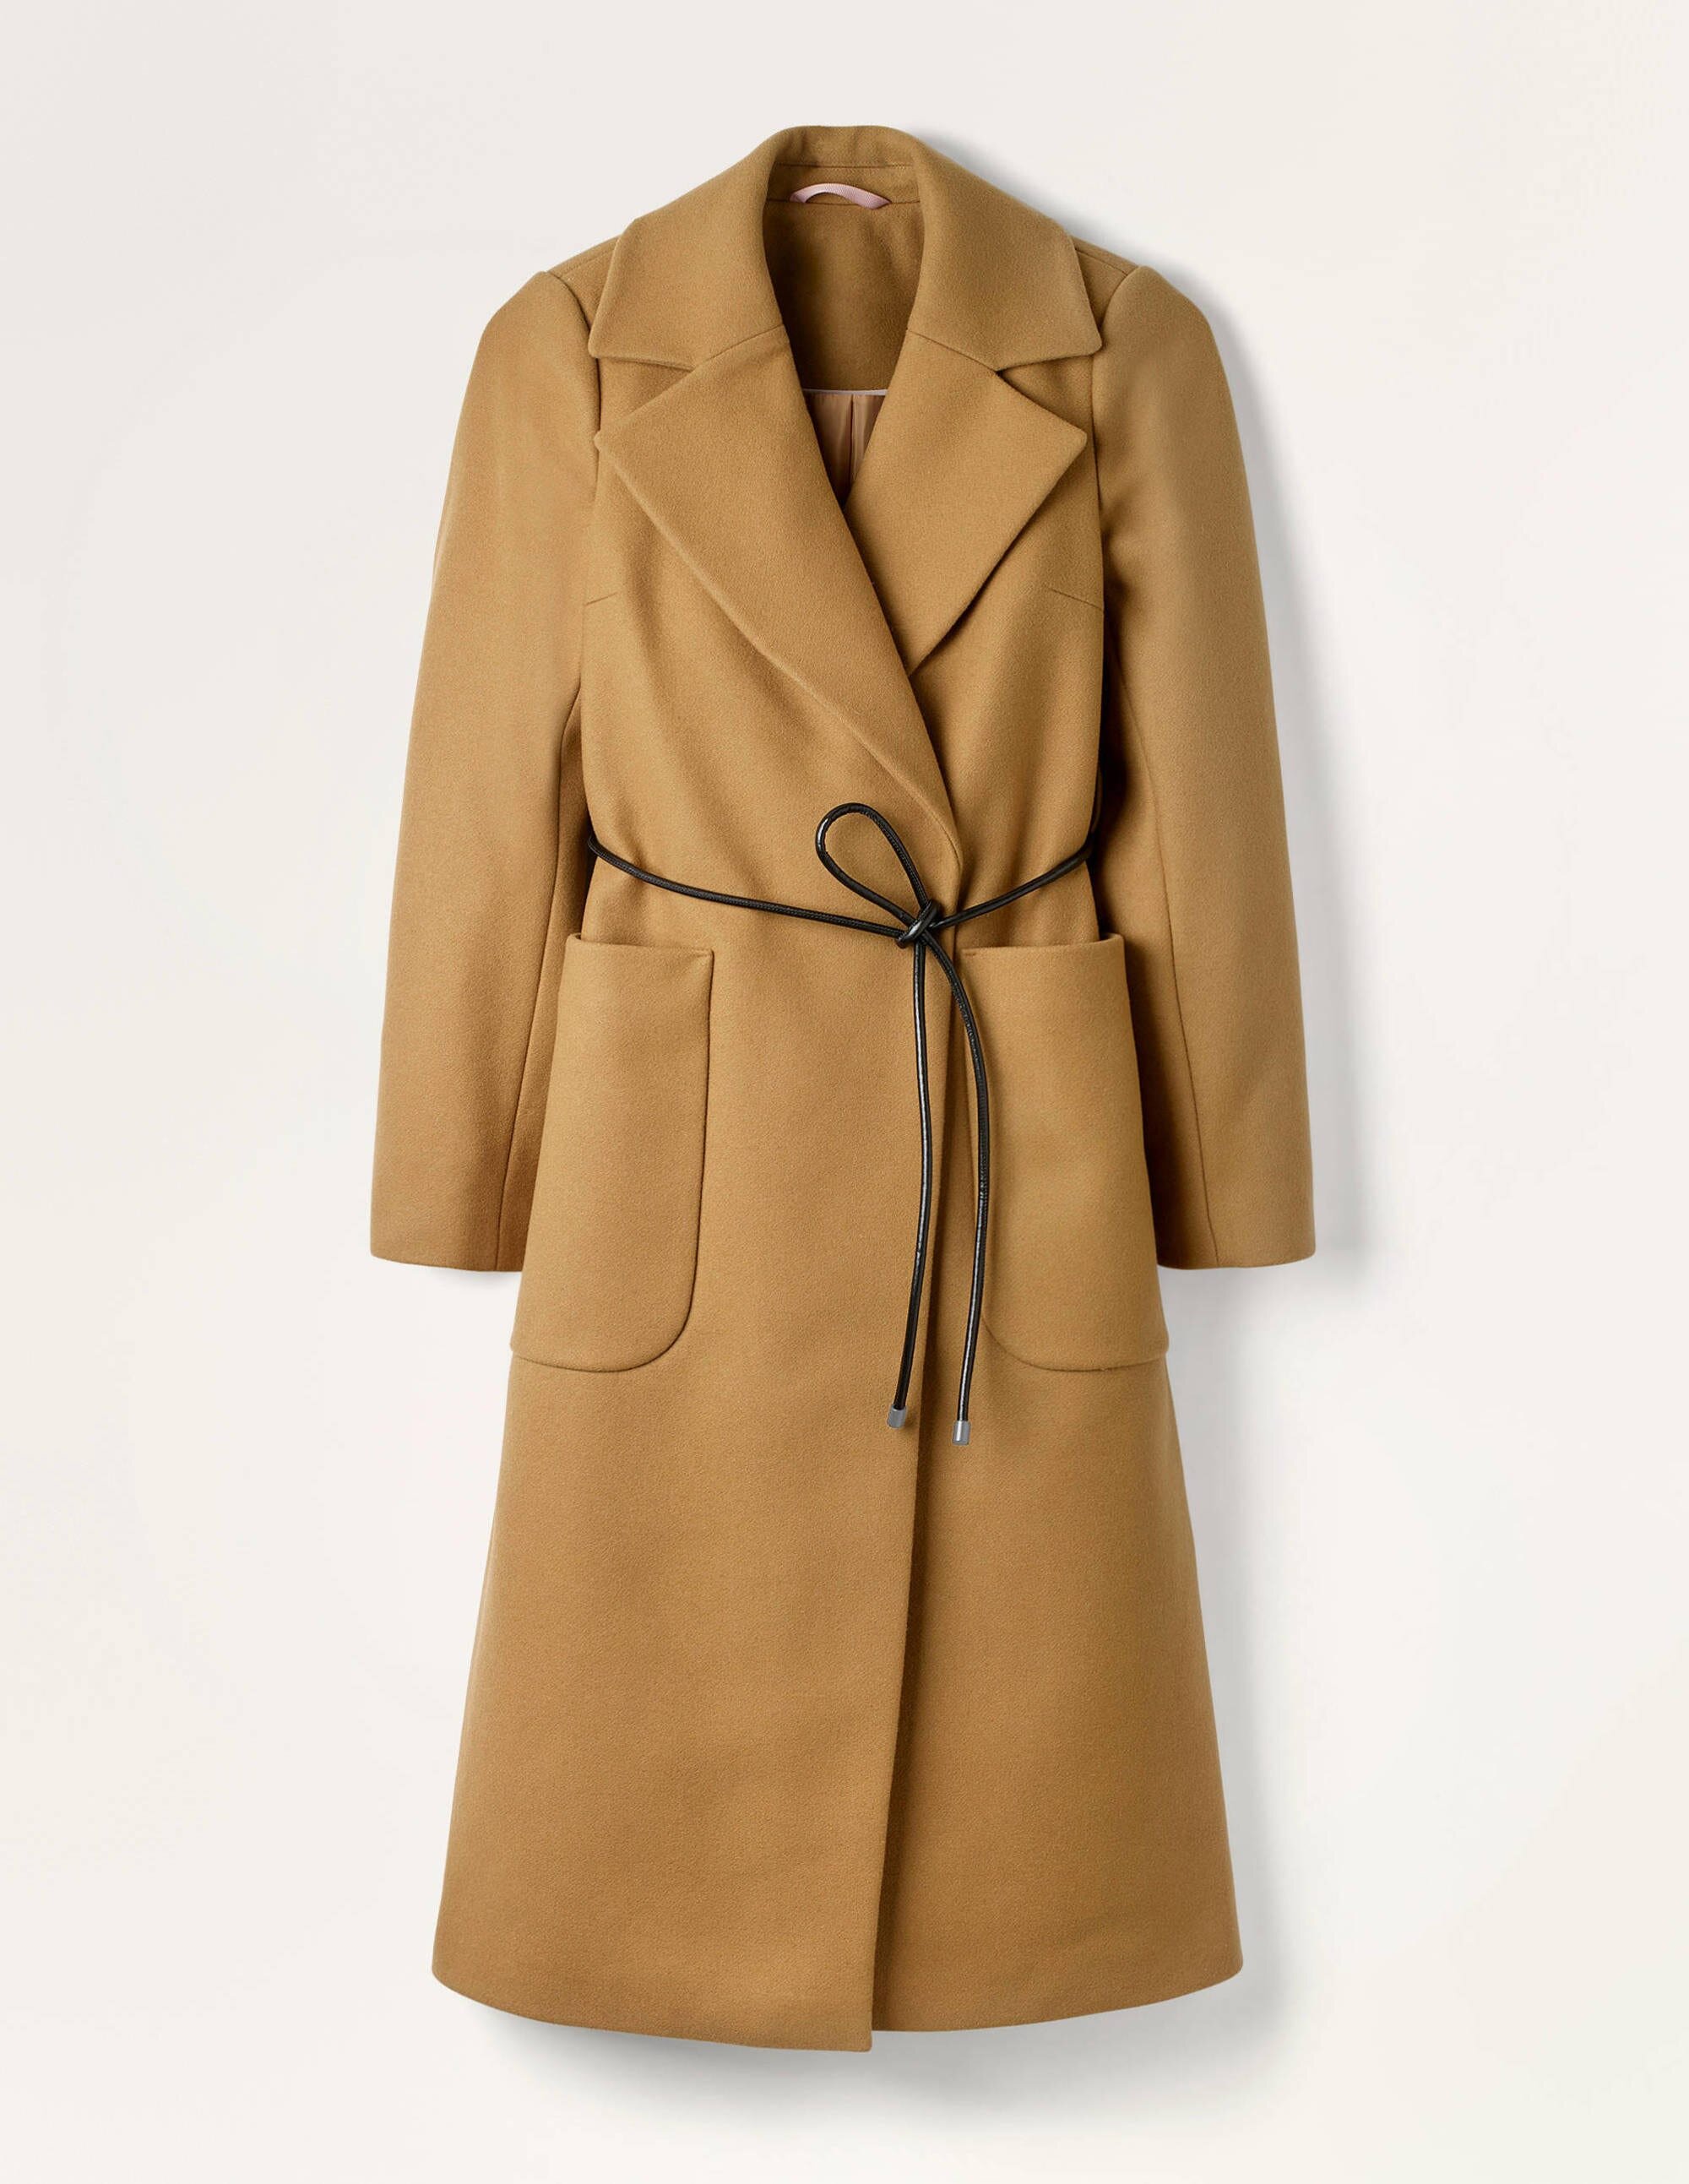 Coat, £230, Boden